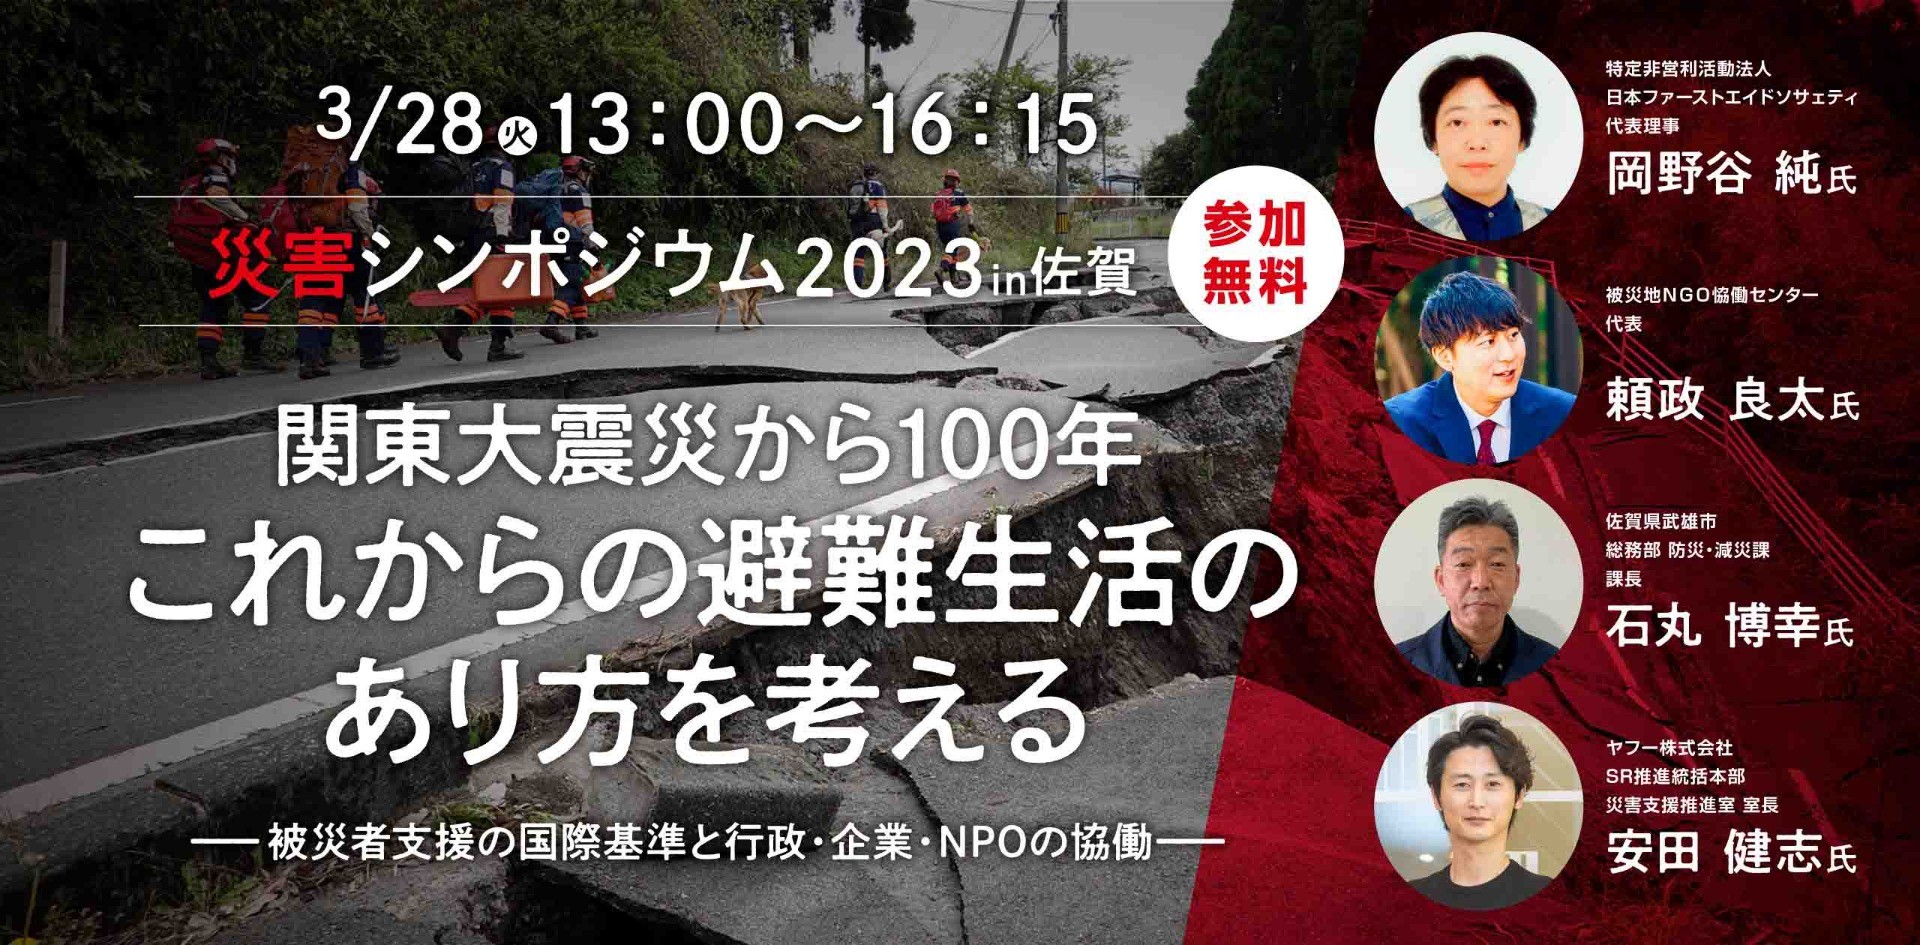 【参加募集中】3/28 災害シンポジウム「関東大震災から100年 これからの避難生活のあり方を考える」